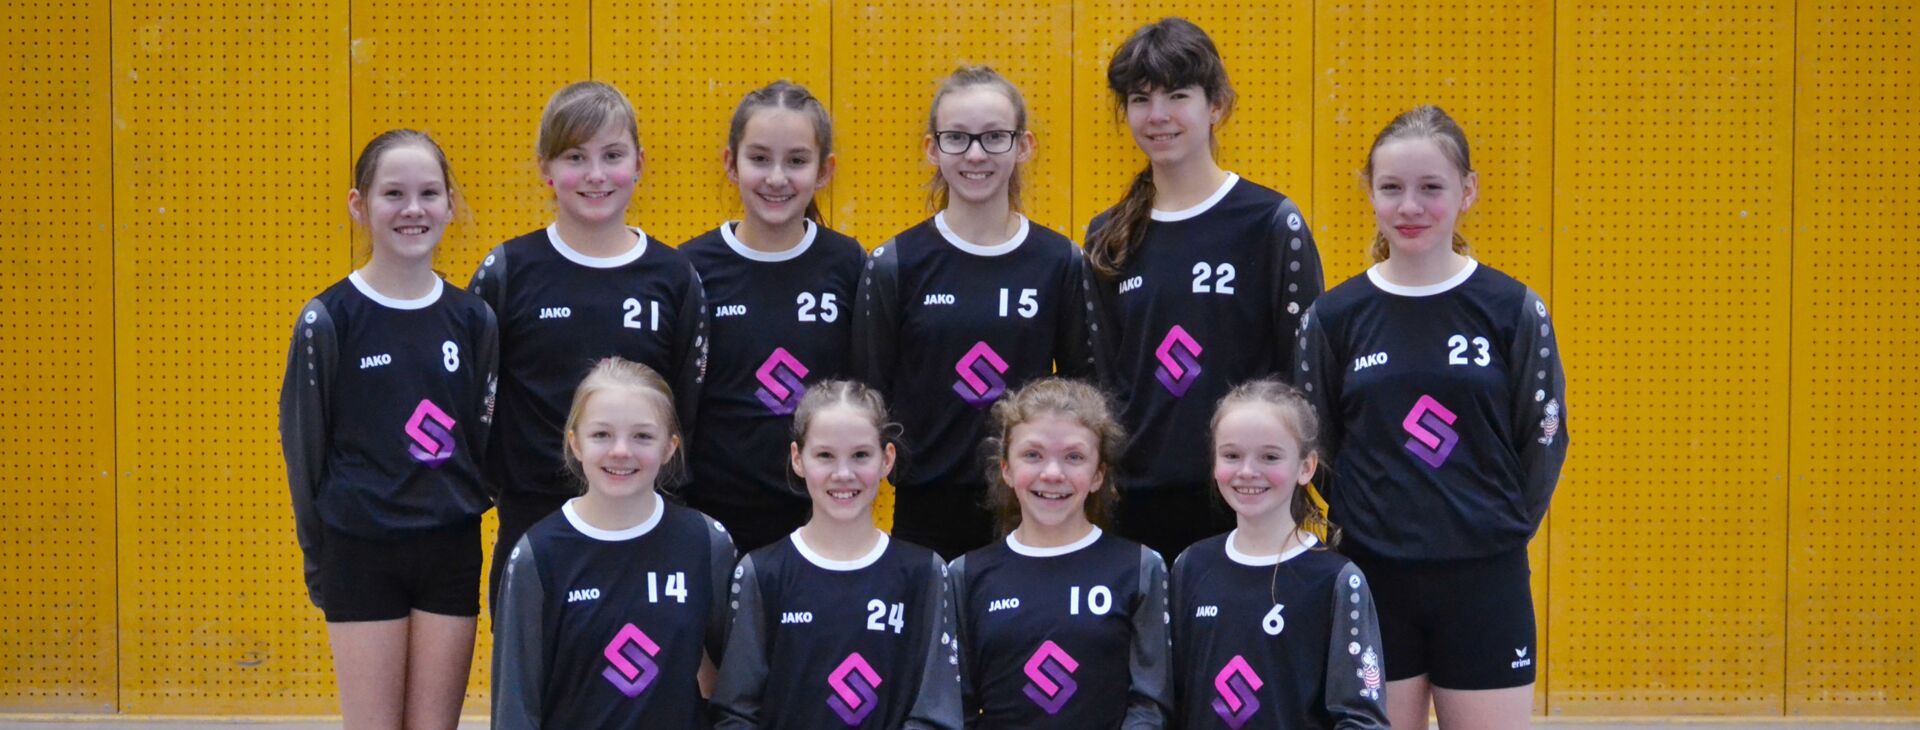 Die Mädchen-Faustballmannschaft (U12) des TV Jahn Schneverdingen präsentieren in der Sporthalle die neuen Trikots mit dem Stadtwerke-Logo.